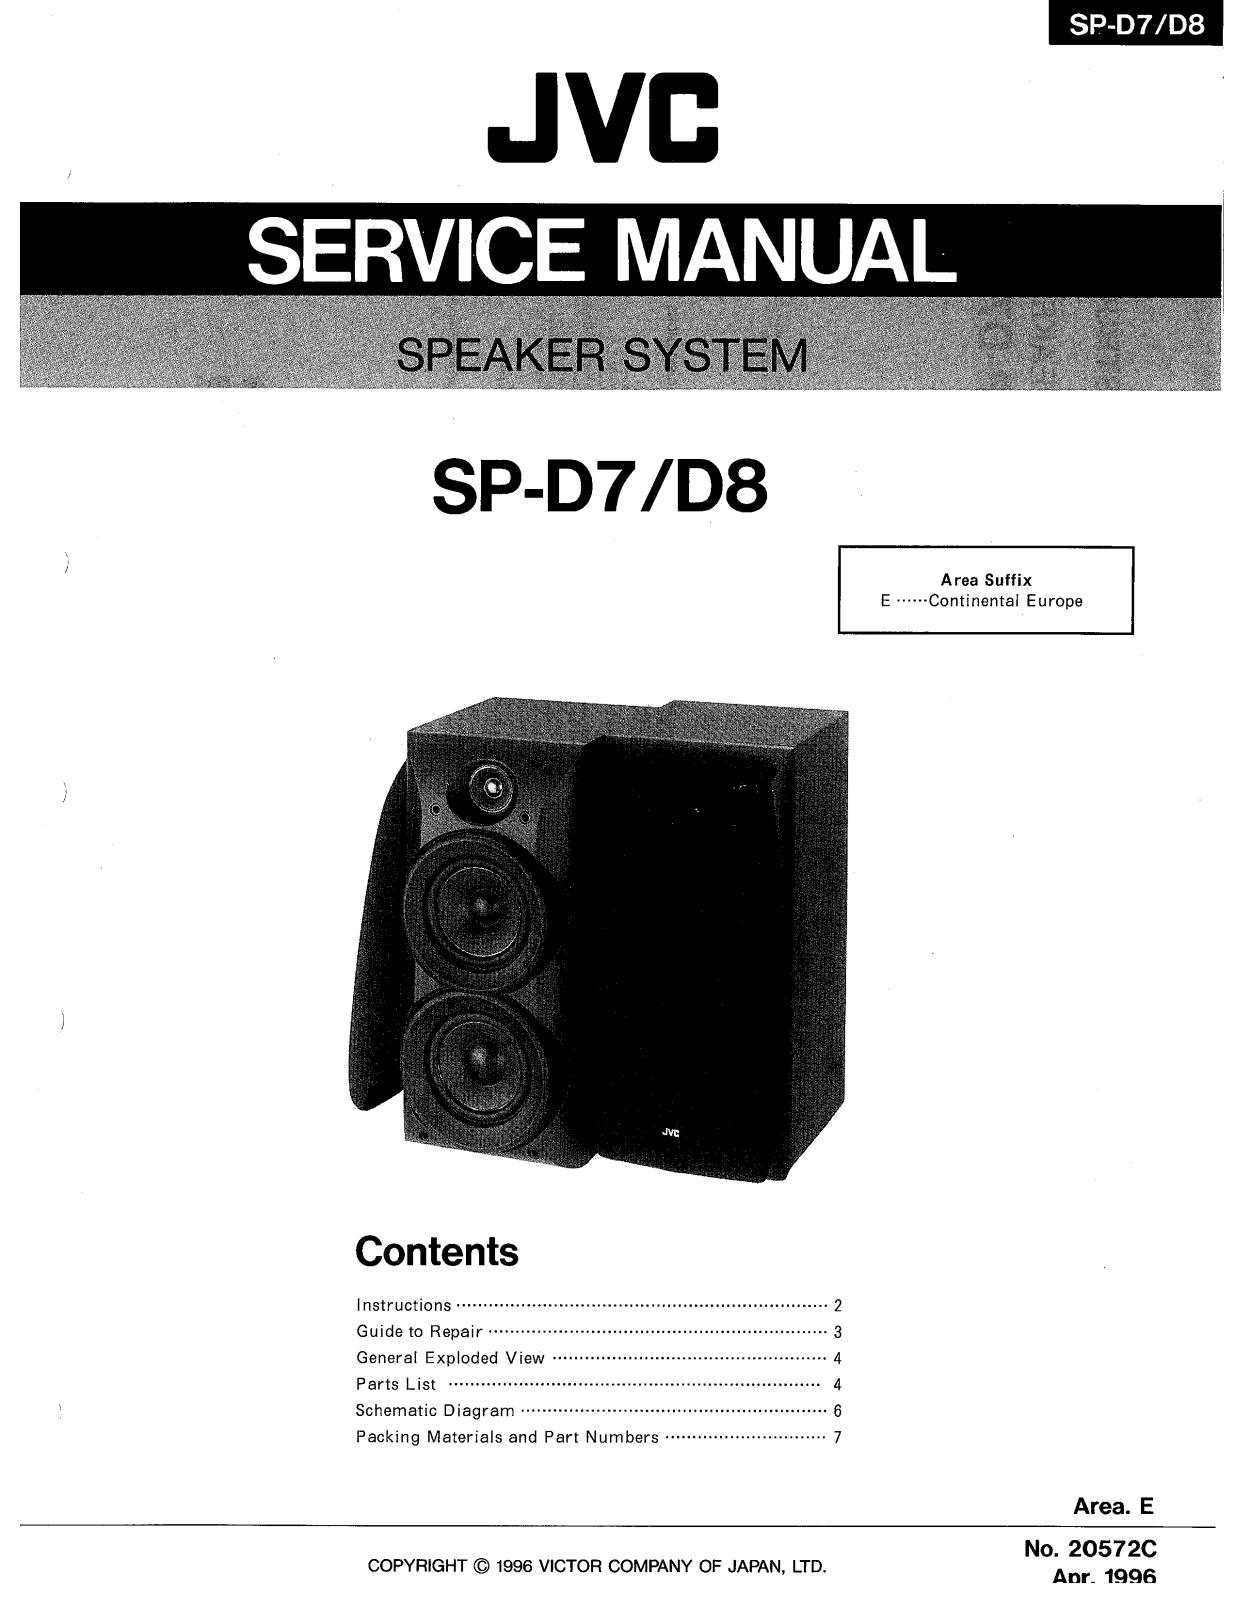 JVC SP-D7, SP-D8 Service Manual